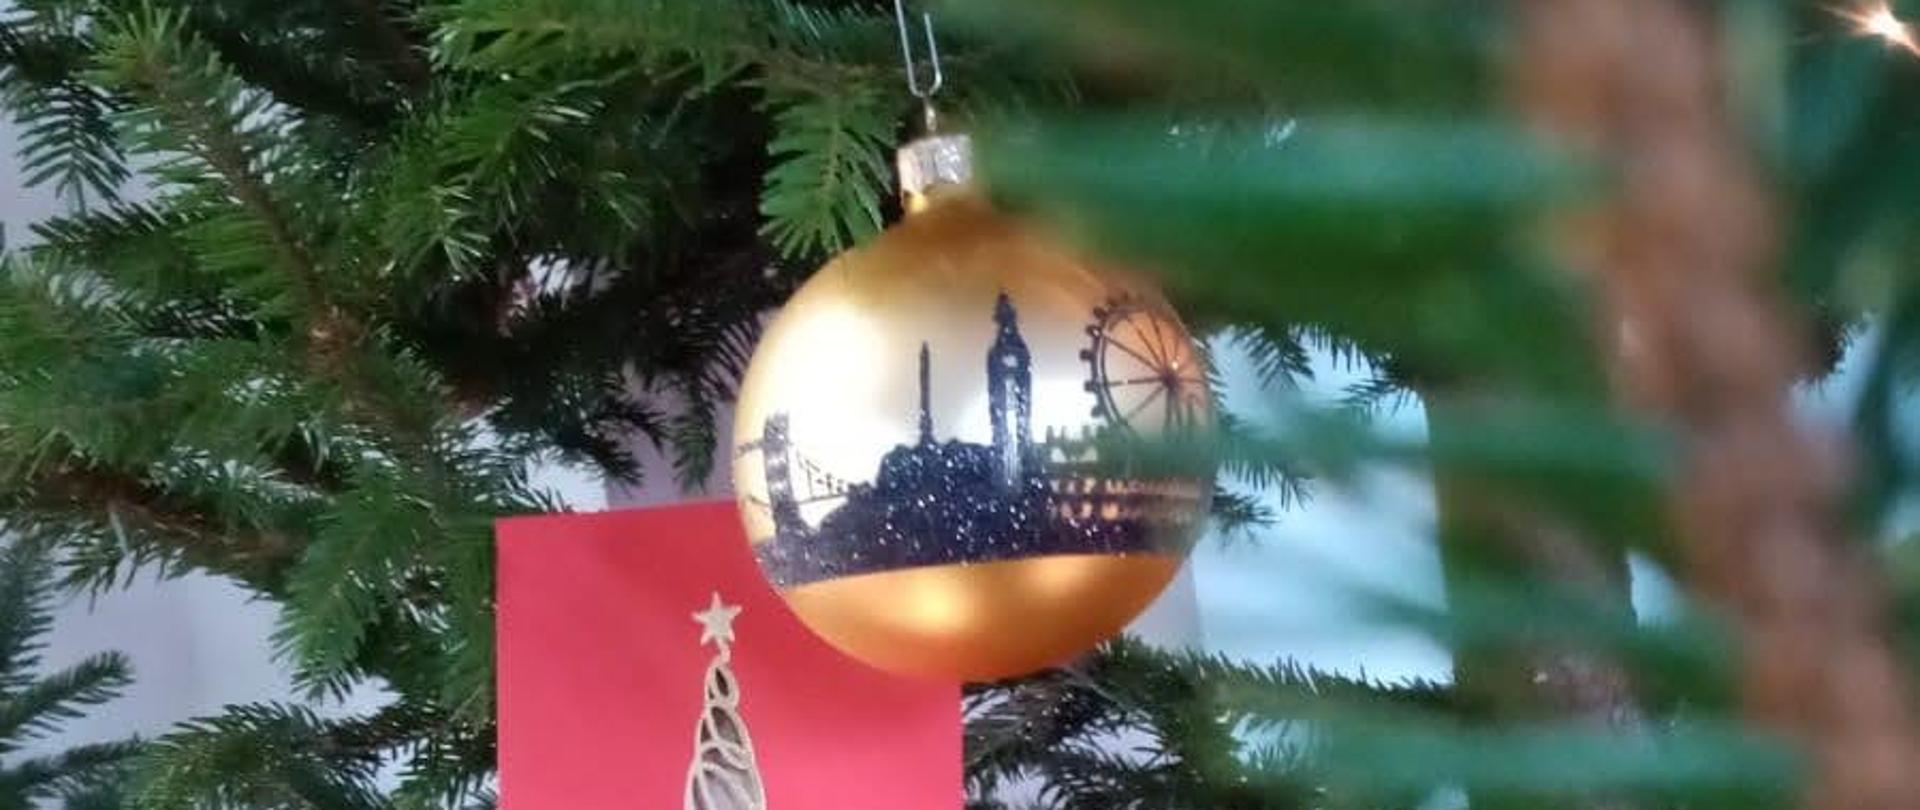 Foto przedstawia świąteczną bombkę i kartkę na tle gałęzi choinki, złota bombka z panoramą Gdańska